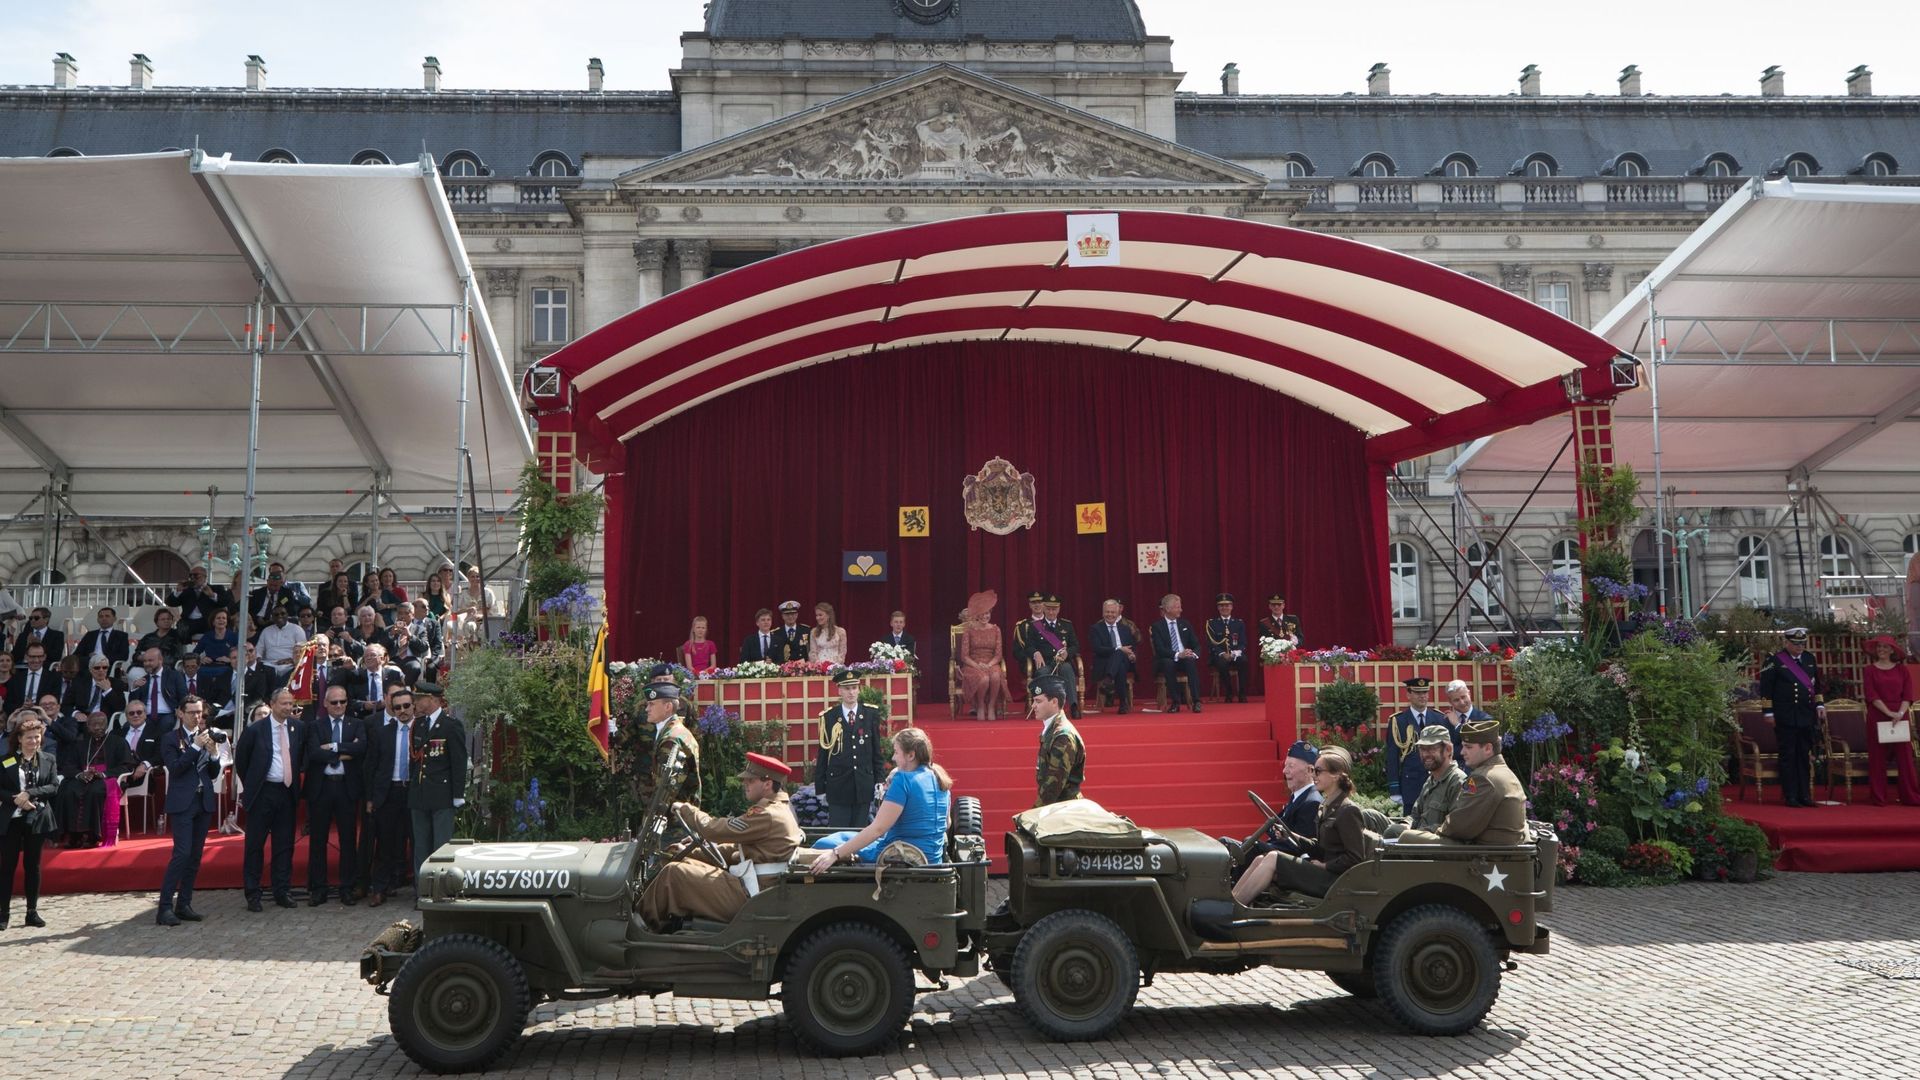 Passage de deux jeep devant le Palais royal lors du défilé militaire le 21 juillet 2019